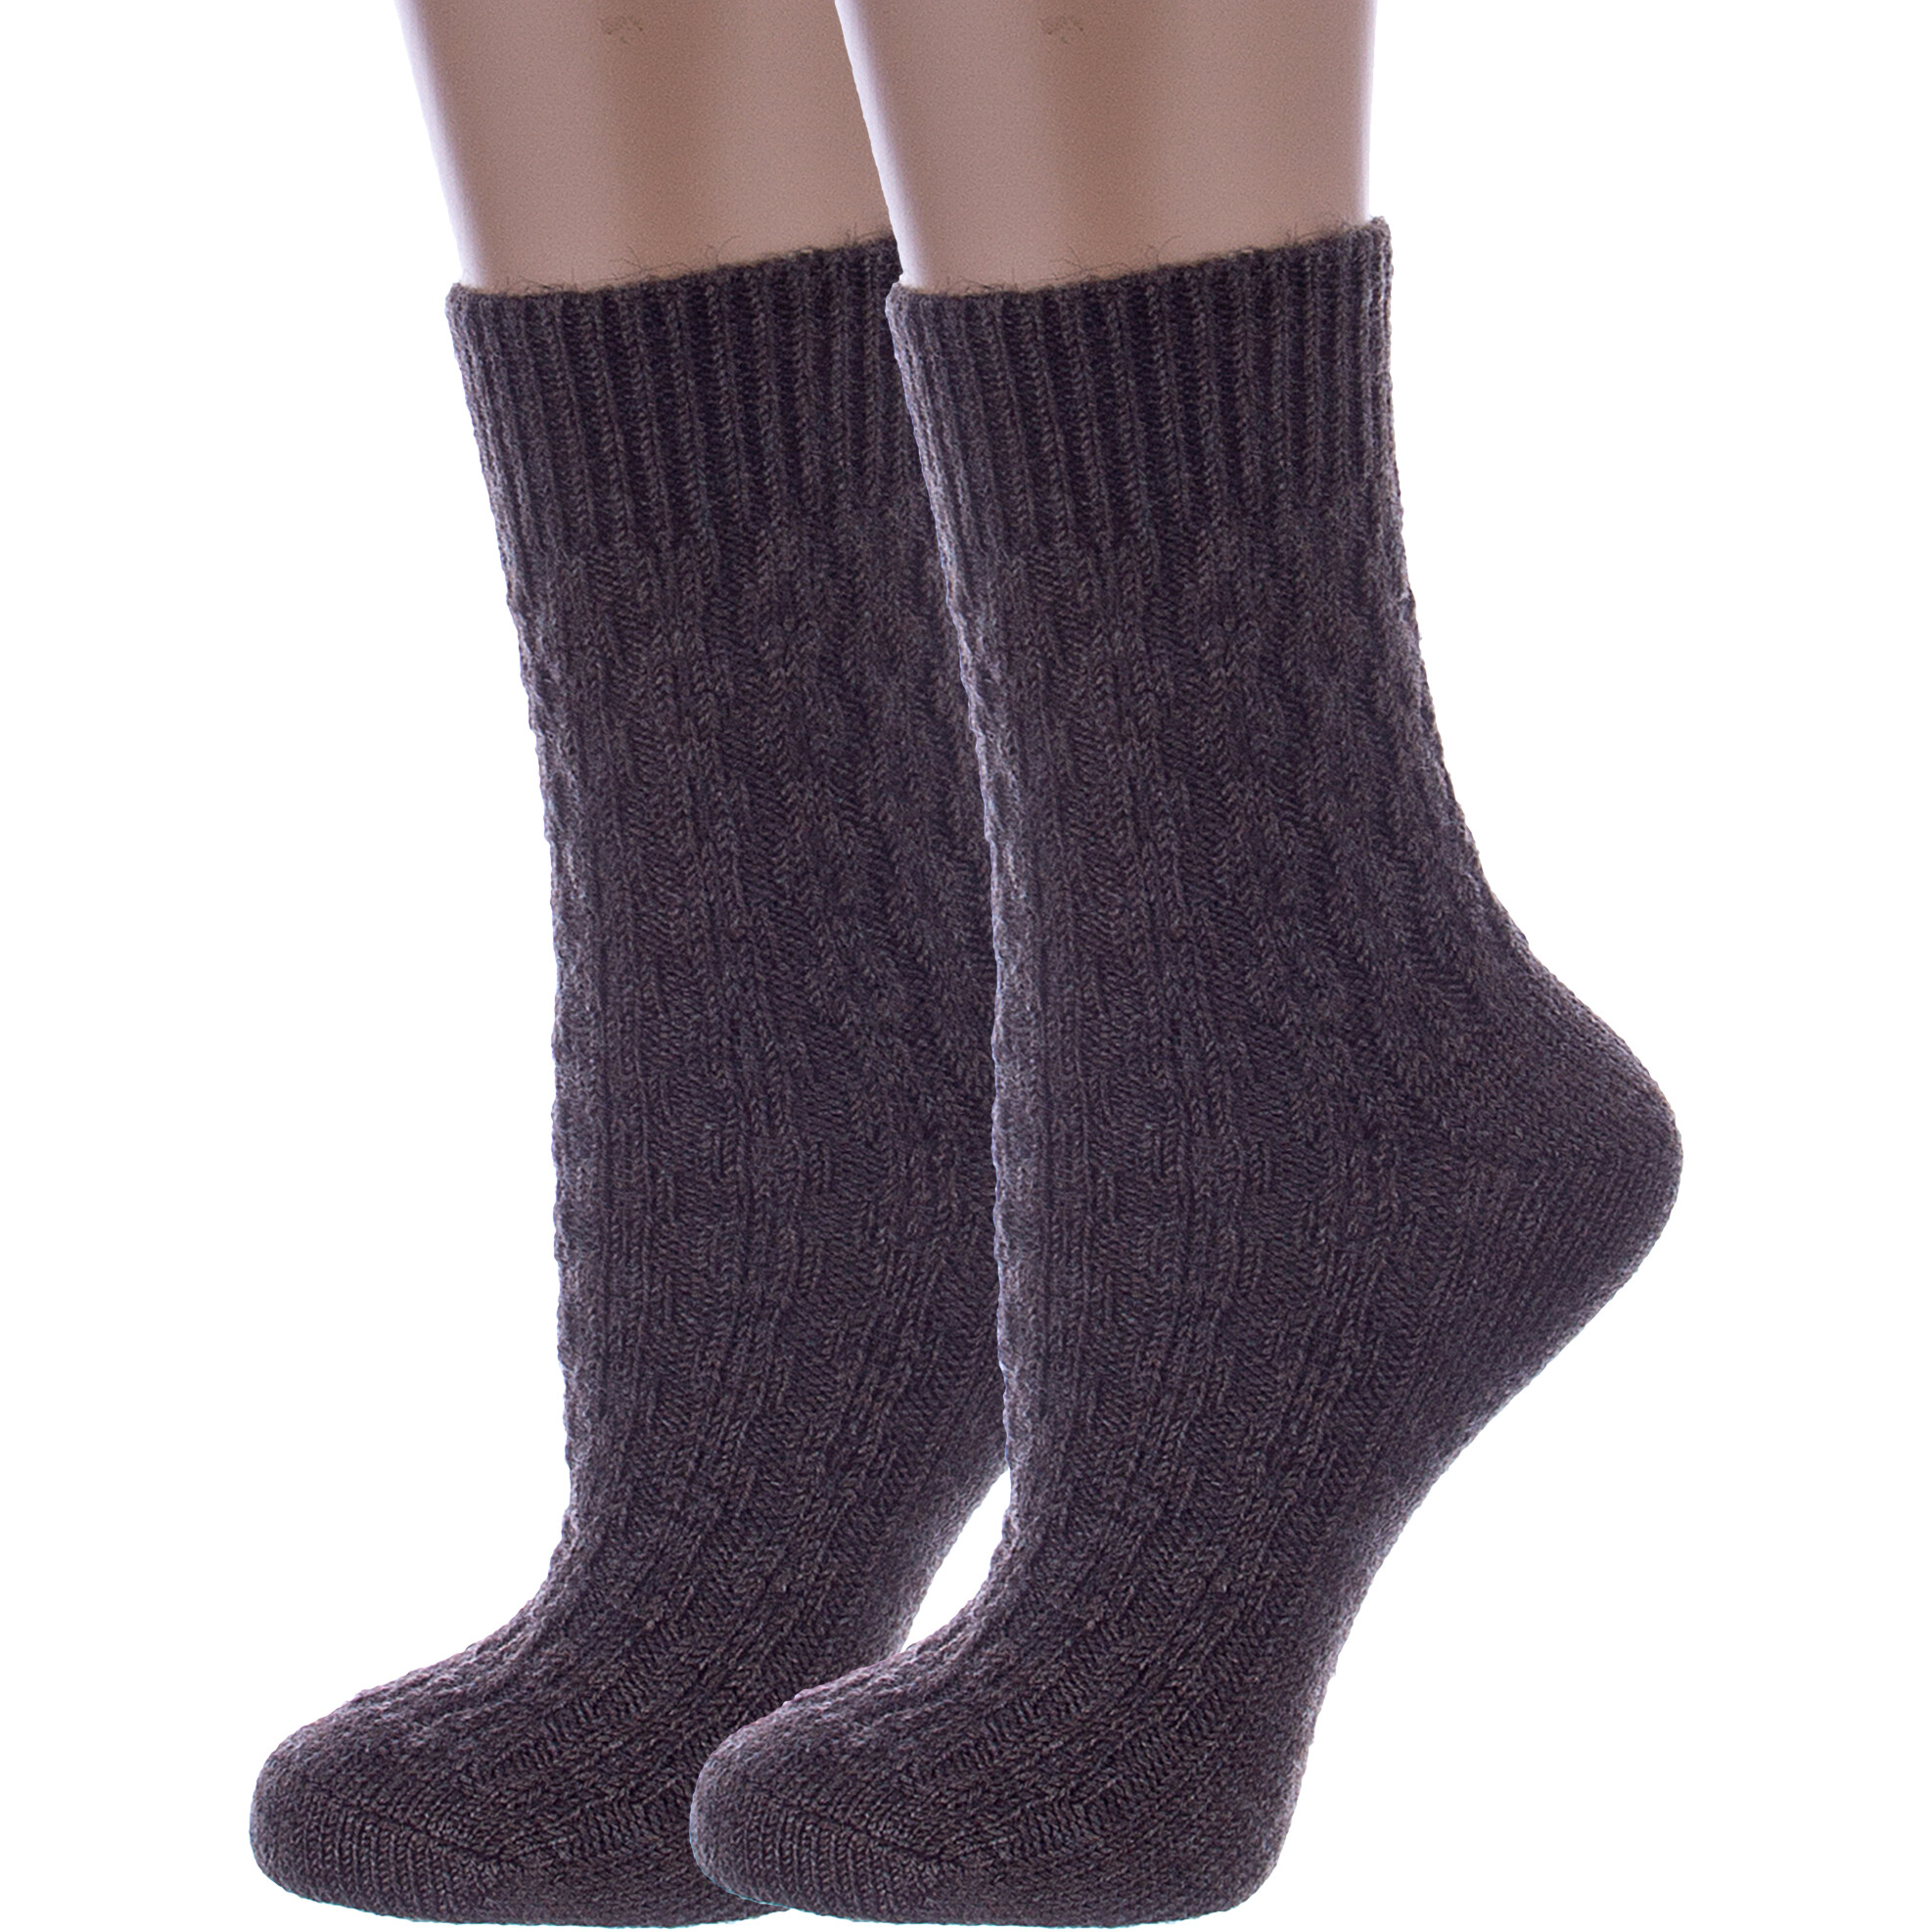 Комплект носков женских Rusocks 2-Ж-185 коричневых 25 2 пары